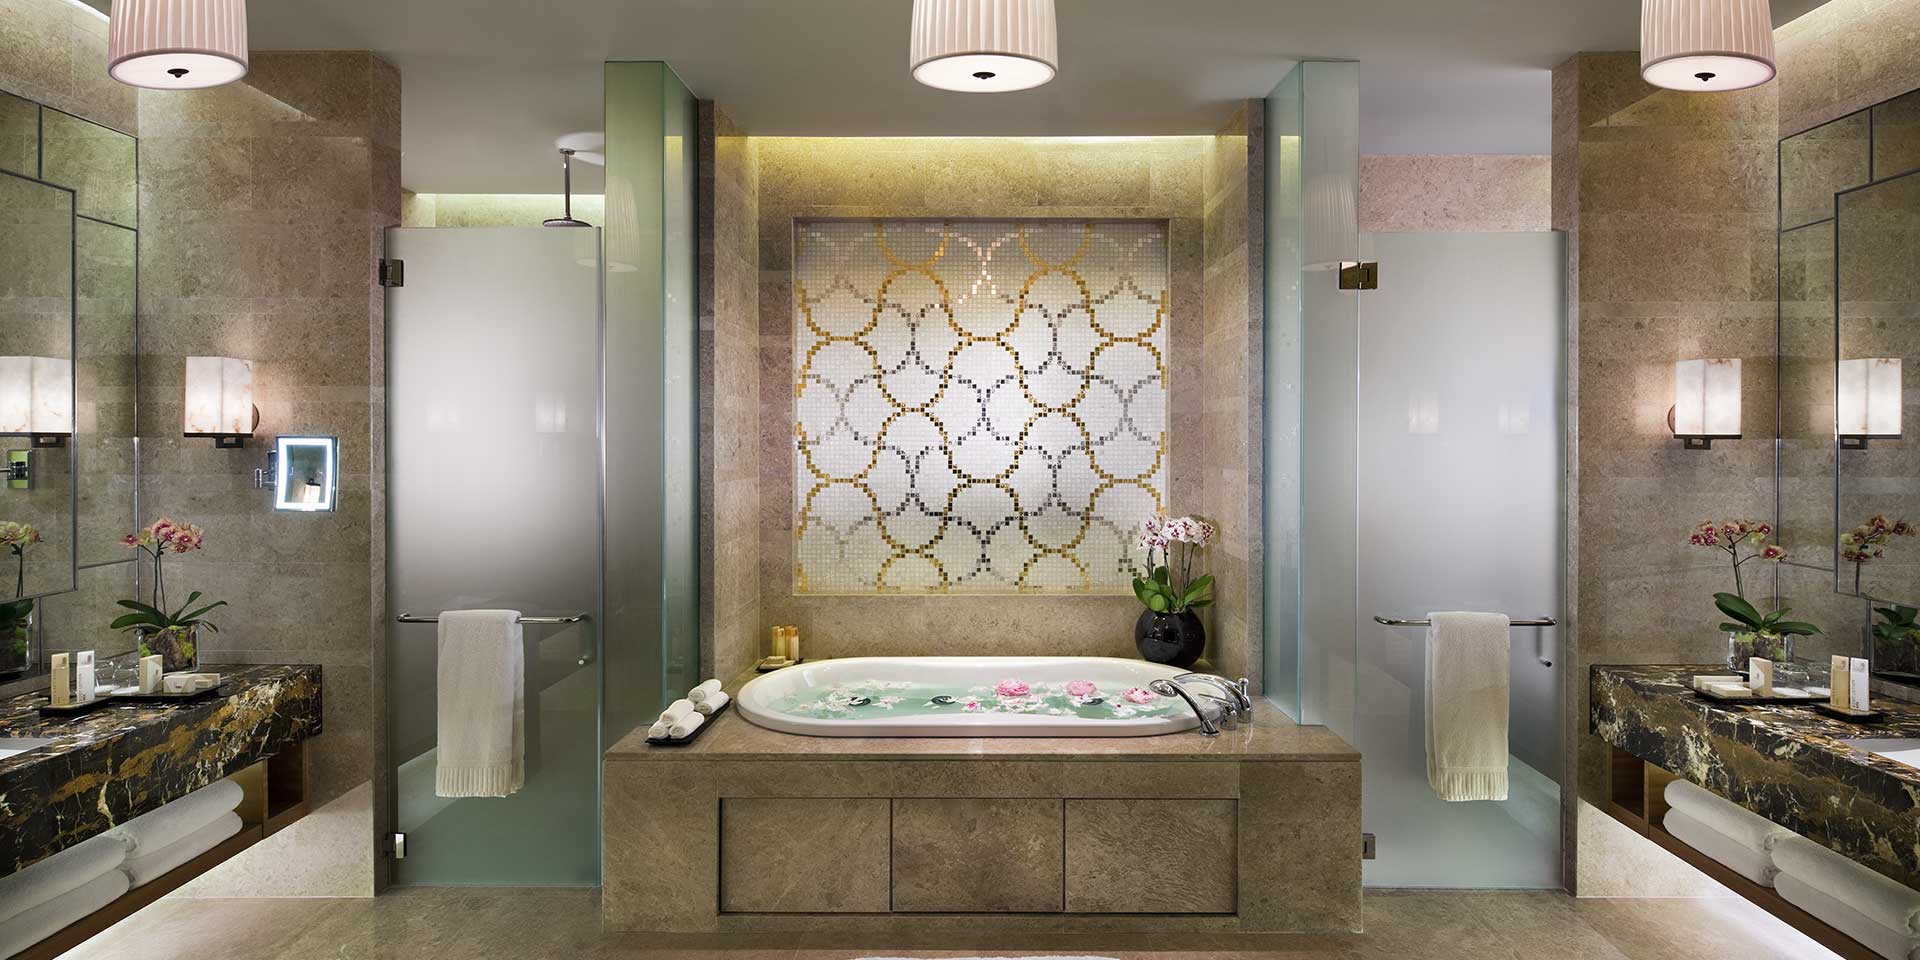 Presedential Suite Bathroom at Marina Bay Sands